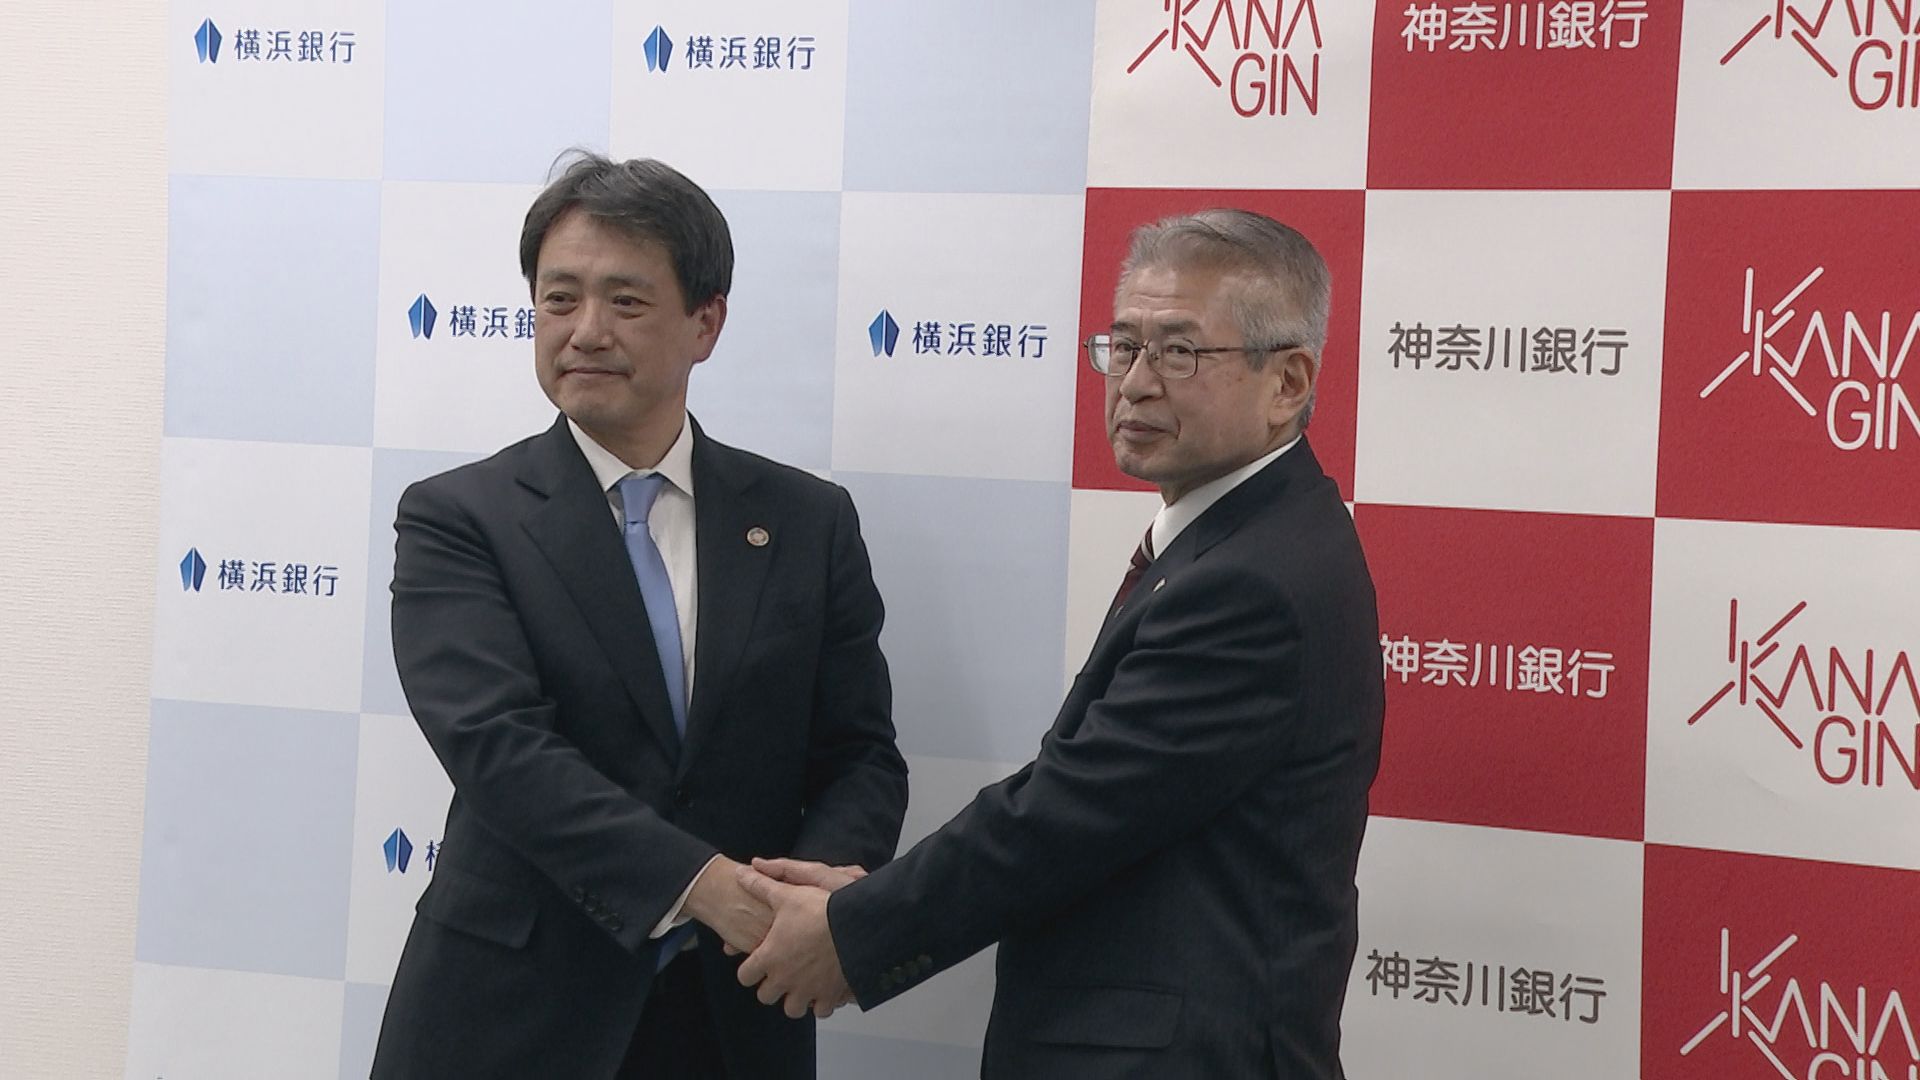 横浜銀行が神奈川銀行に対しTOB実施　完全子会社化を目指すと発表　神奈川銀行は賛同を表明